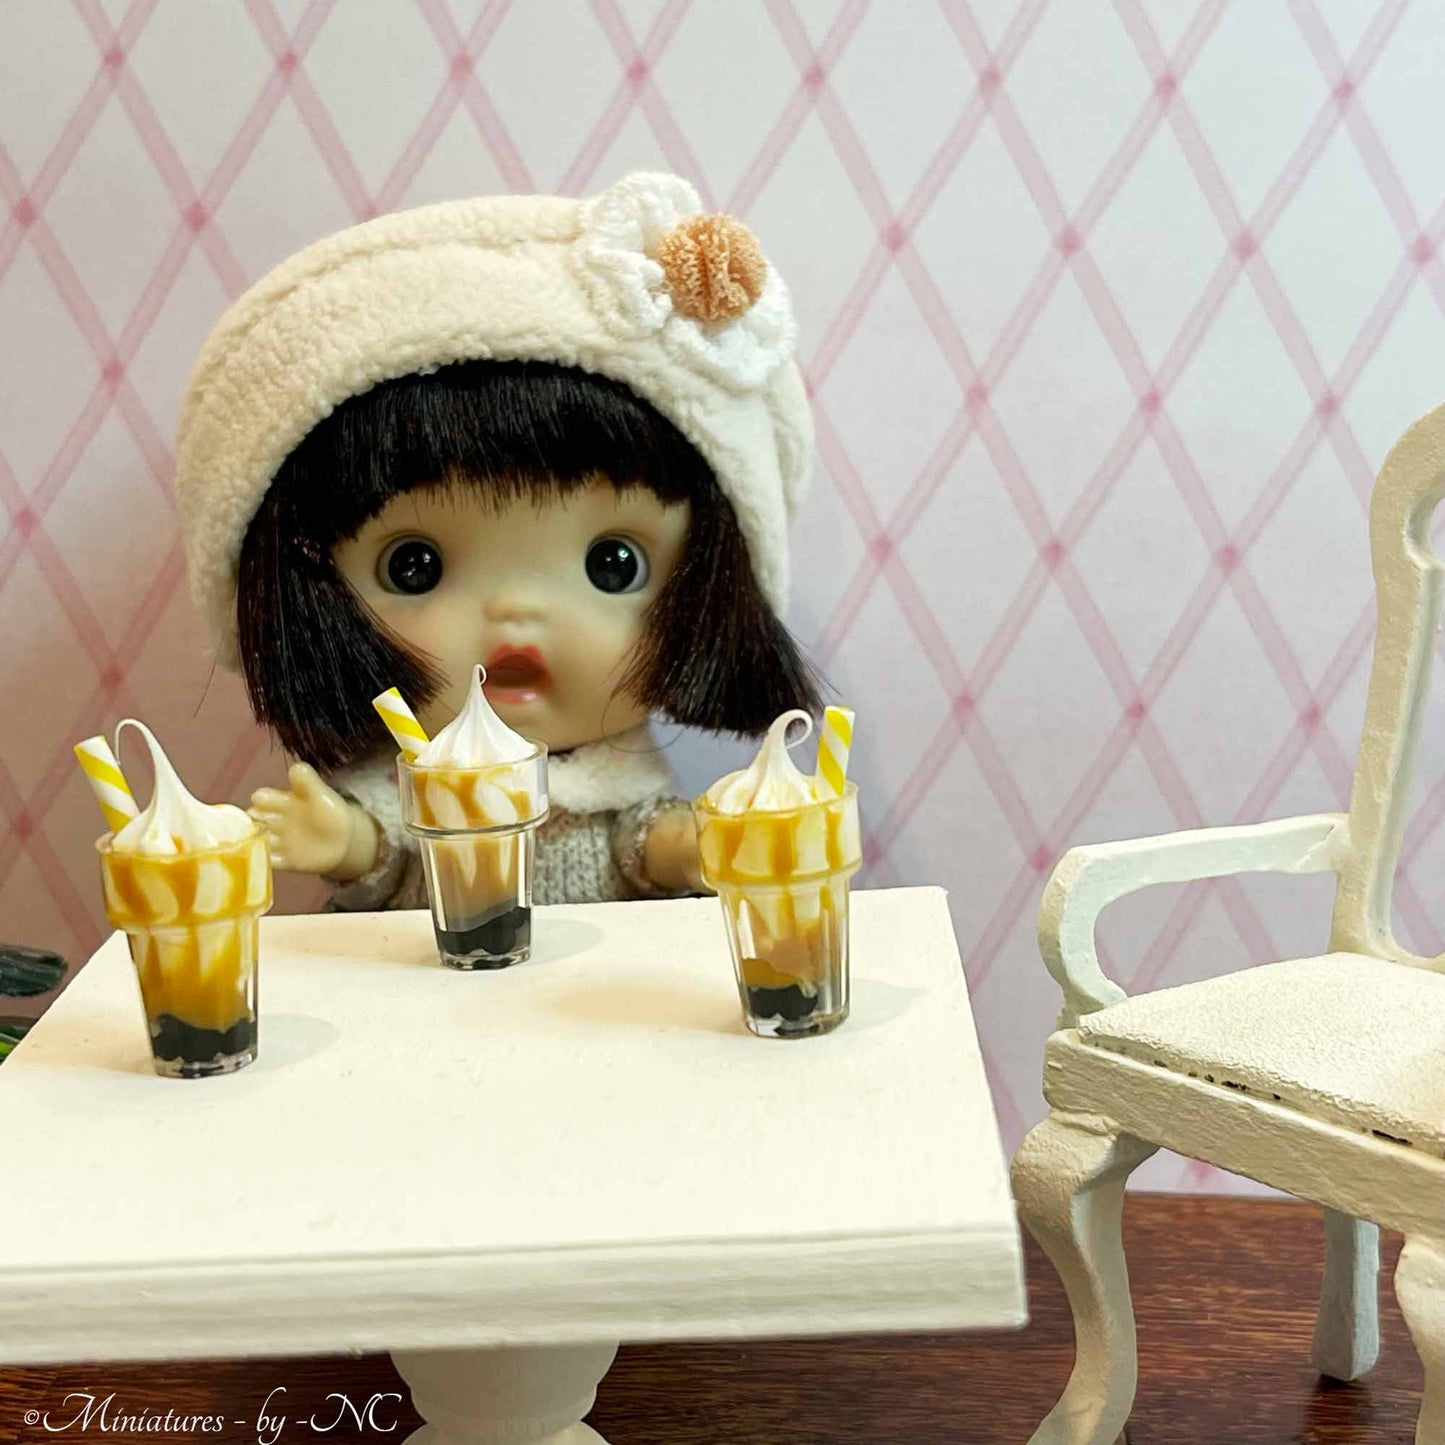 Miniatur-Eisbecher/Eiscreme-Parfait 1 12 Maßstab Puppenhaus-Zubehör